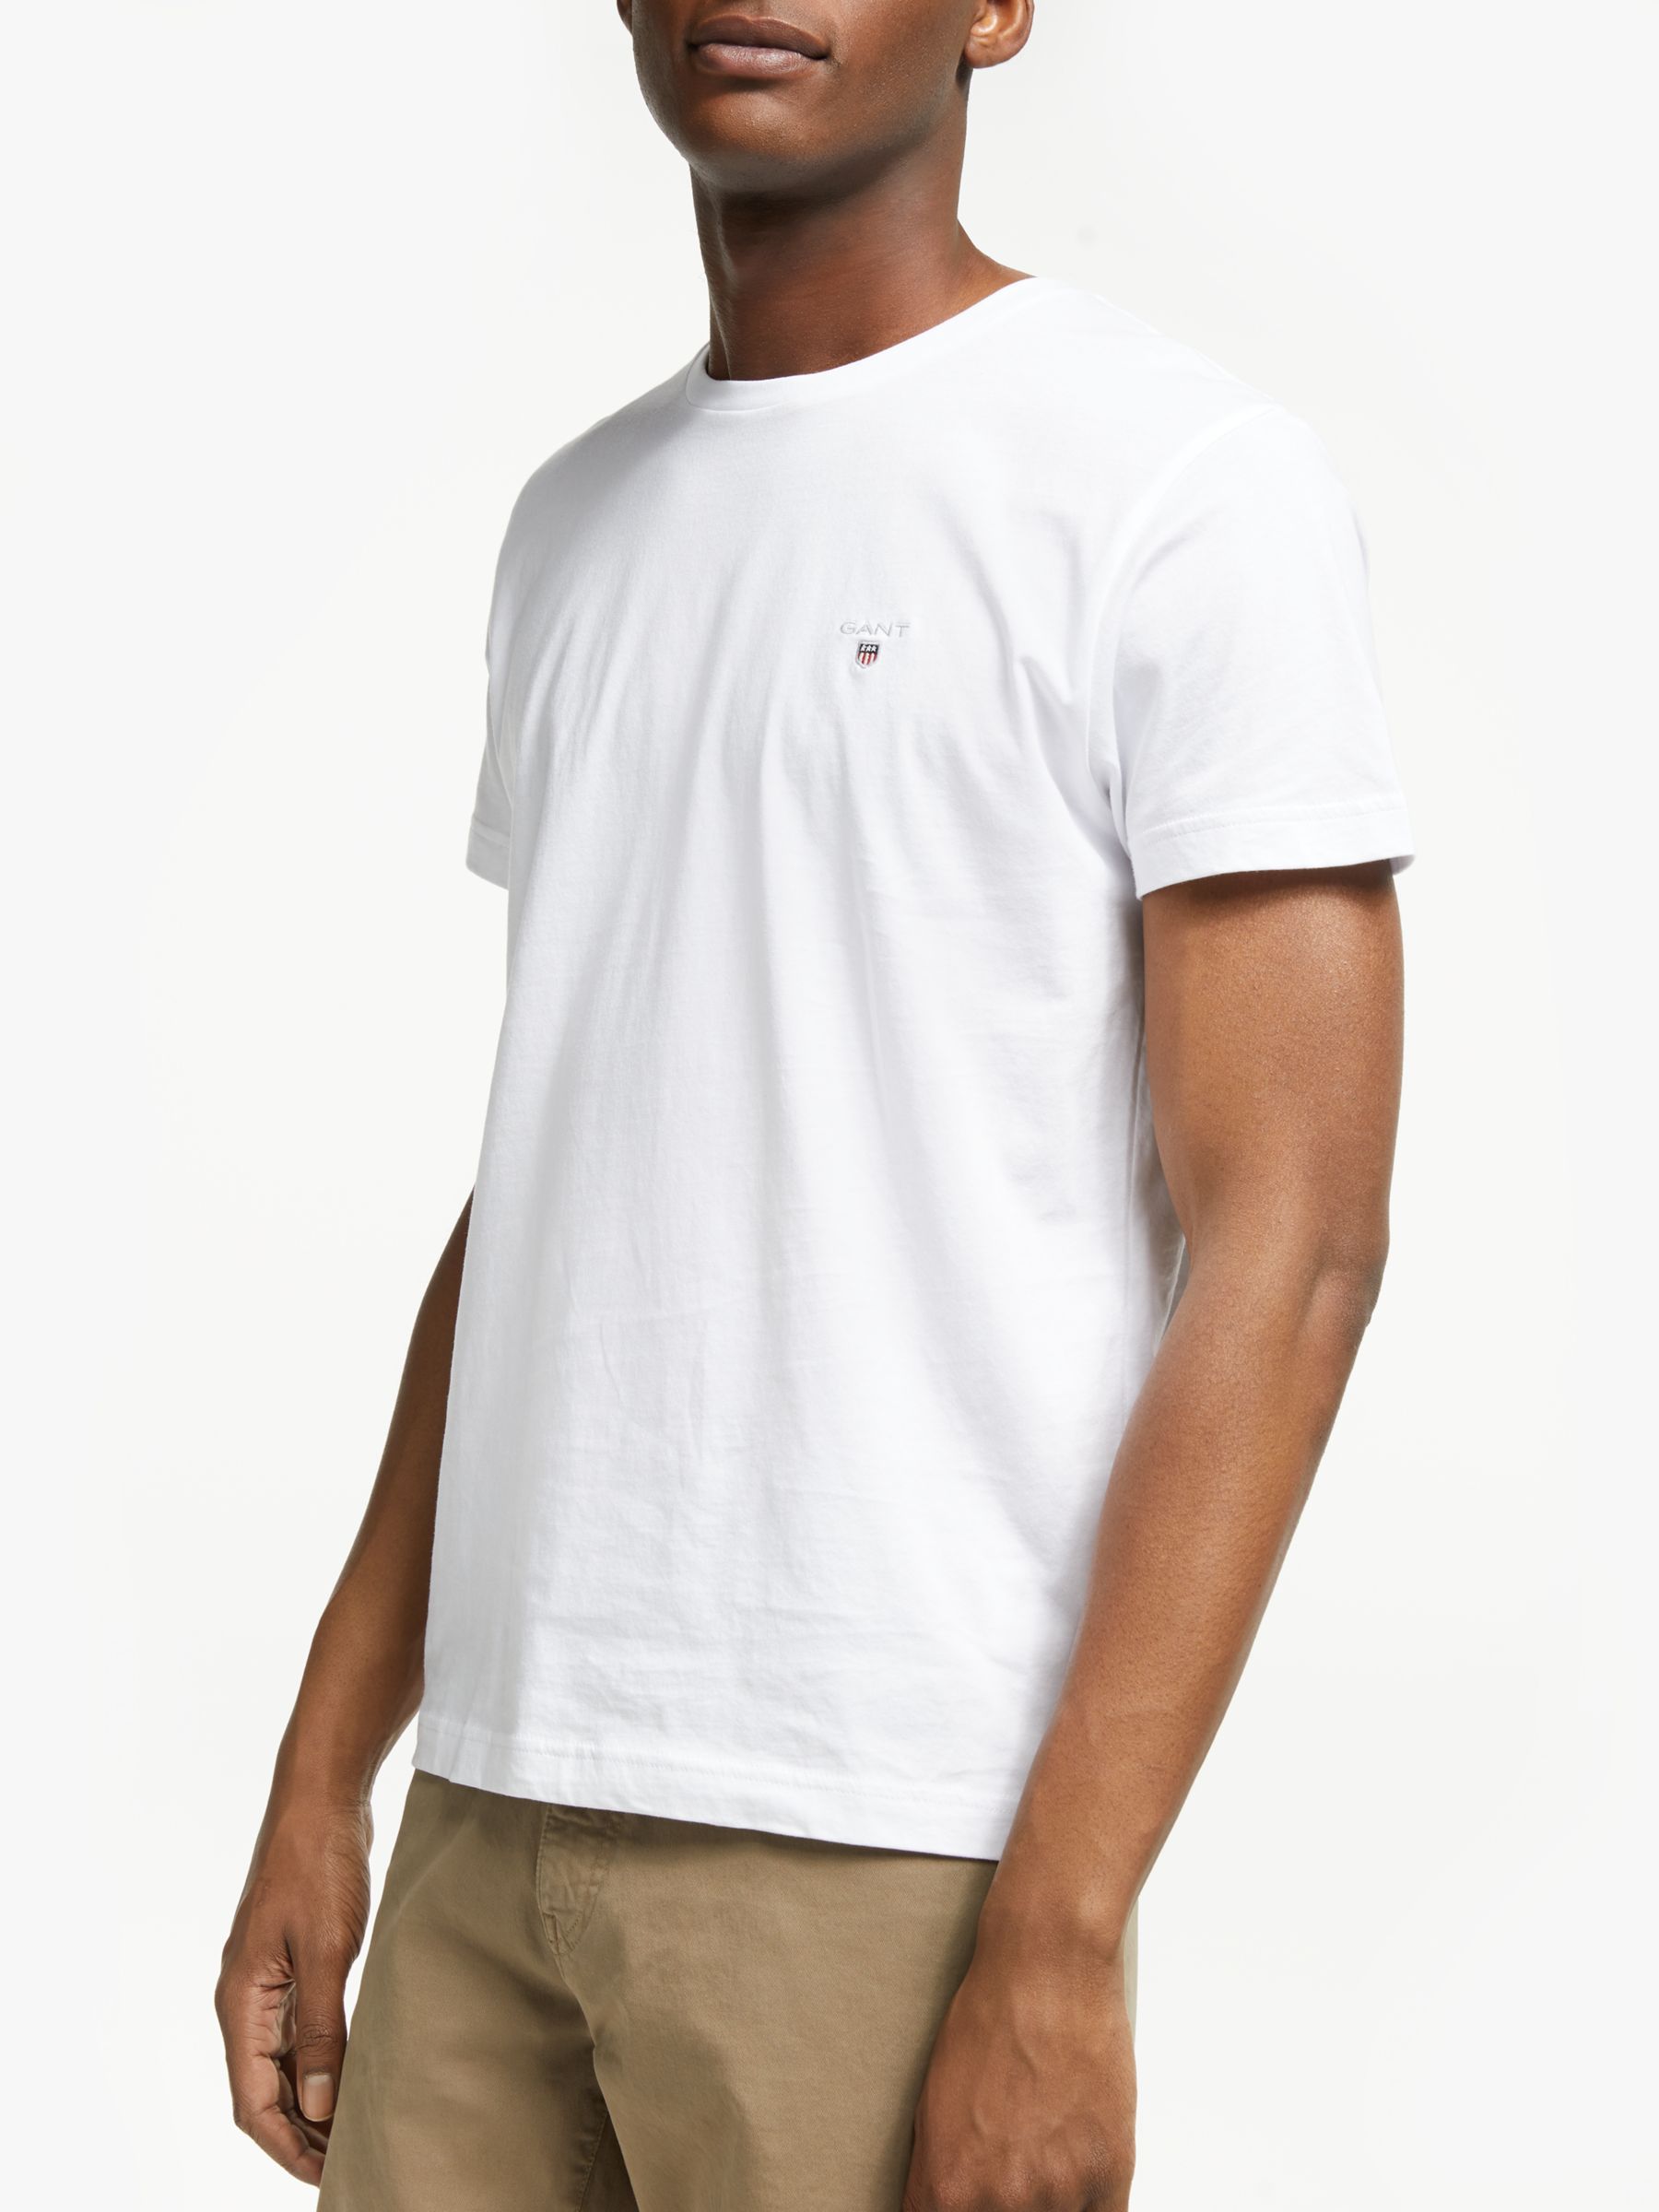 Gant Crew Neck T-Shirt, White, Extra Large